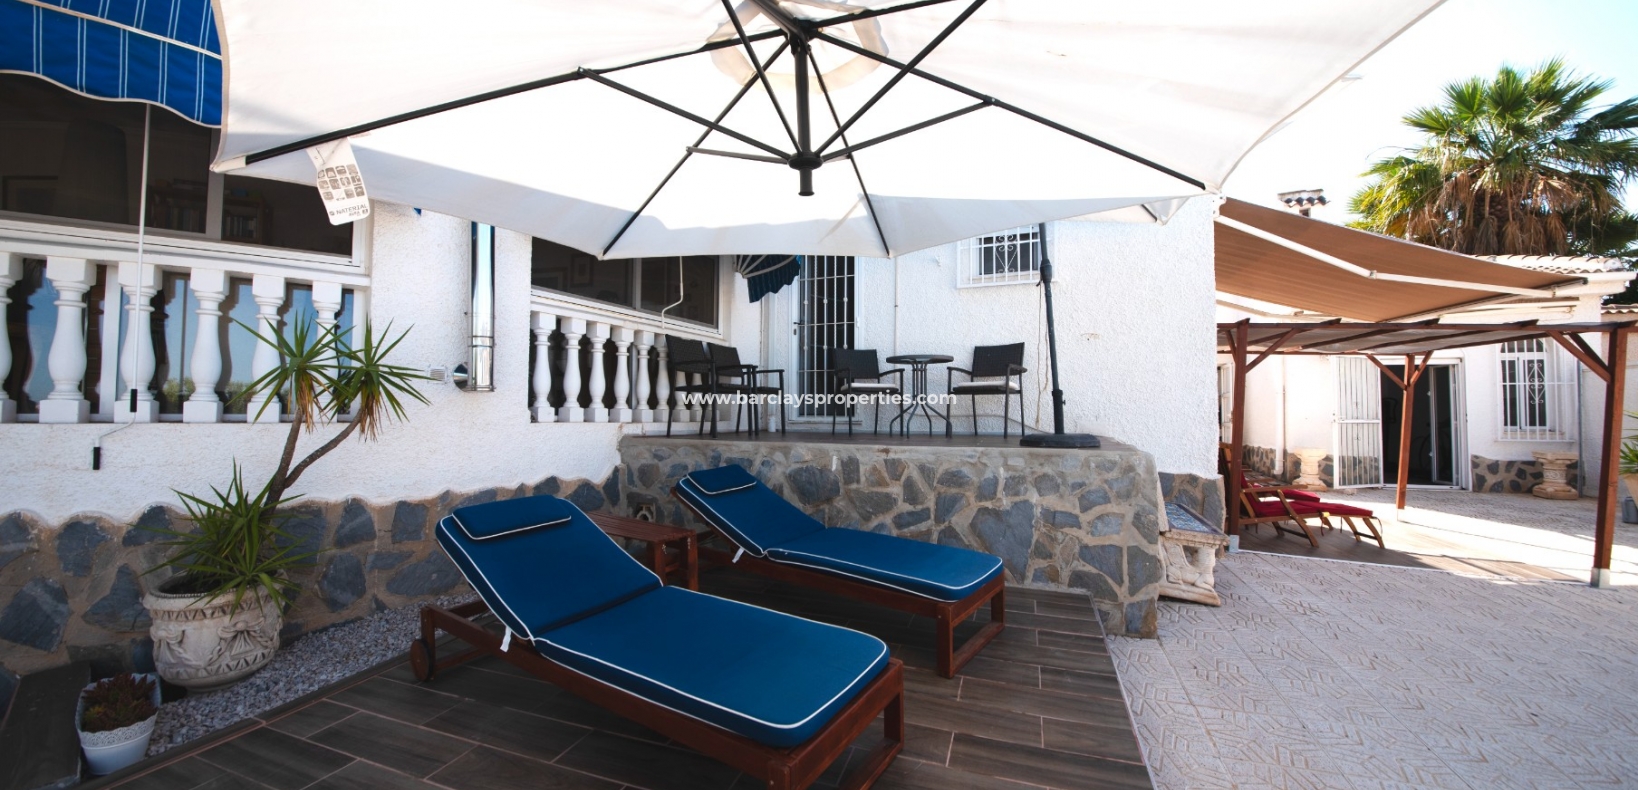 Trädgård - Prestige villa till salu i urbanisering La Escuera, Alicante